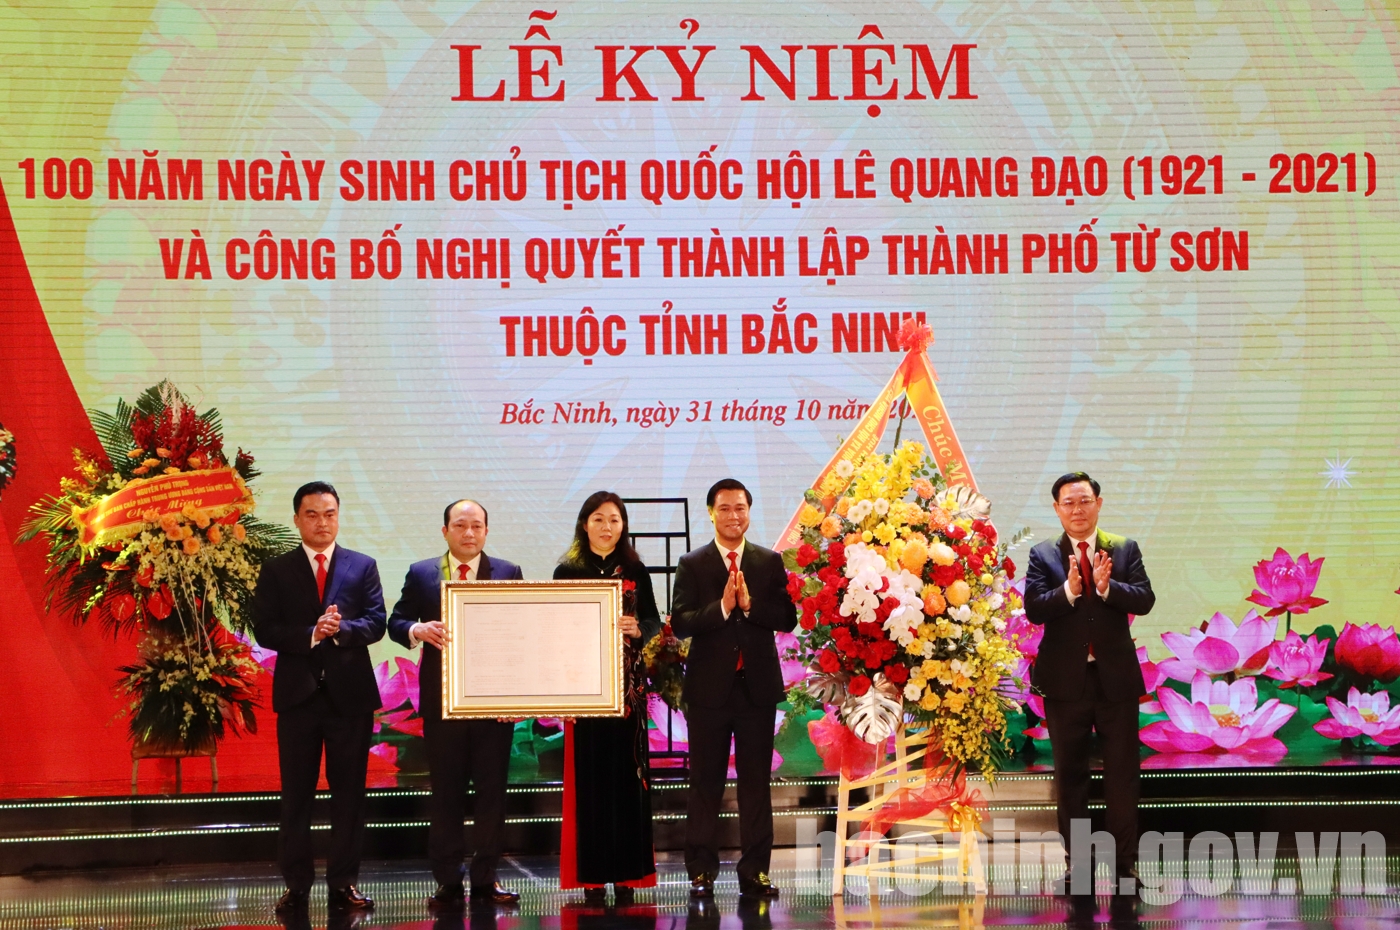 Lễ kỷ niệm 100 năm ngày sinh đồng chí Lê Quang Đạo và công bố Nghị quyết thành lập thành phố Từ Sơn